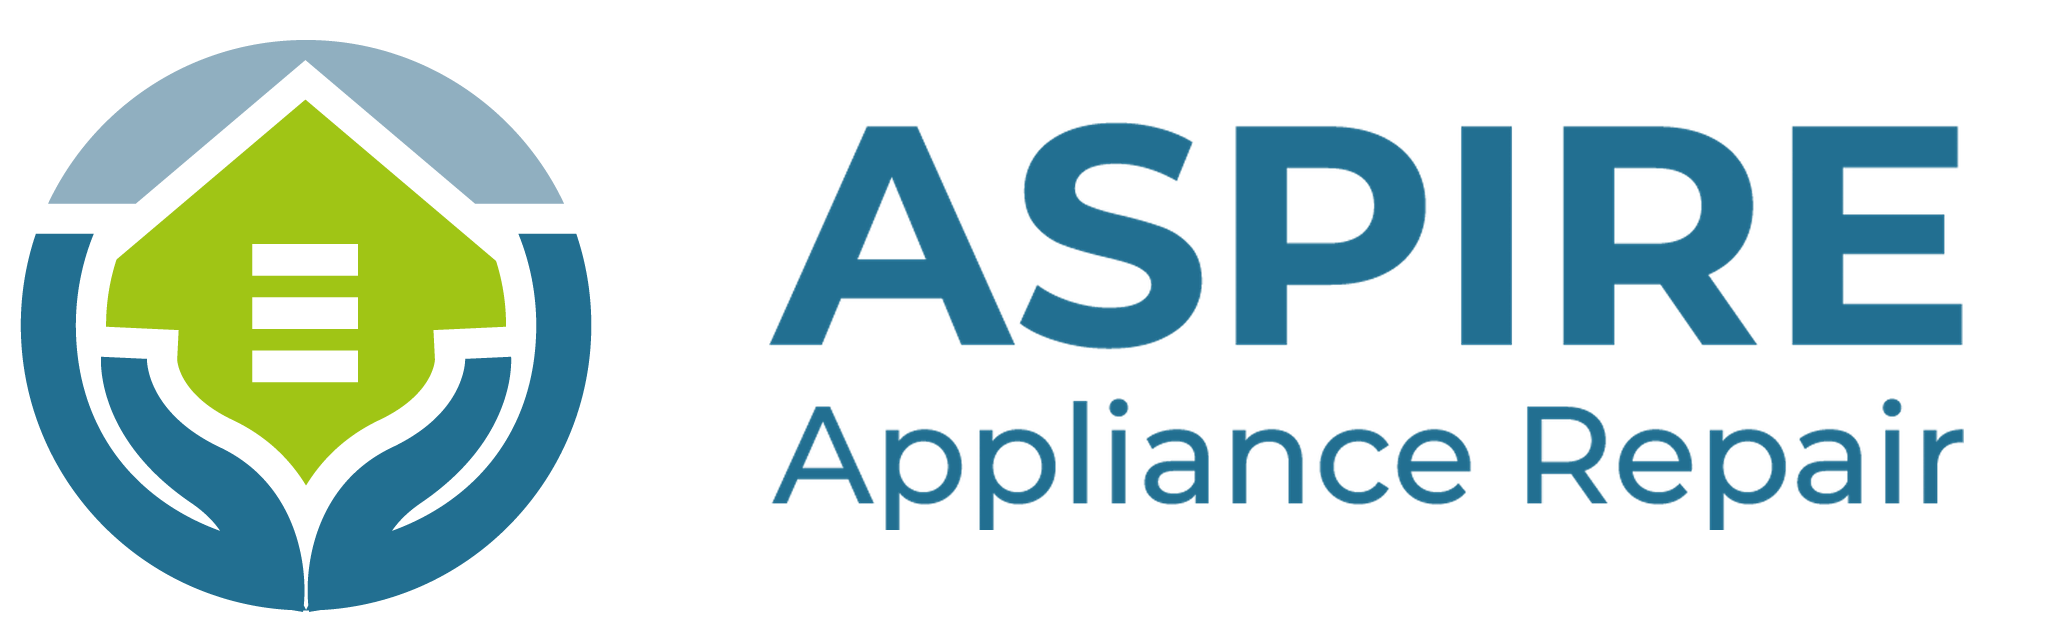 Aspire Appliance Repair Logo